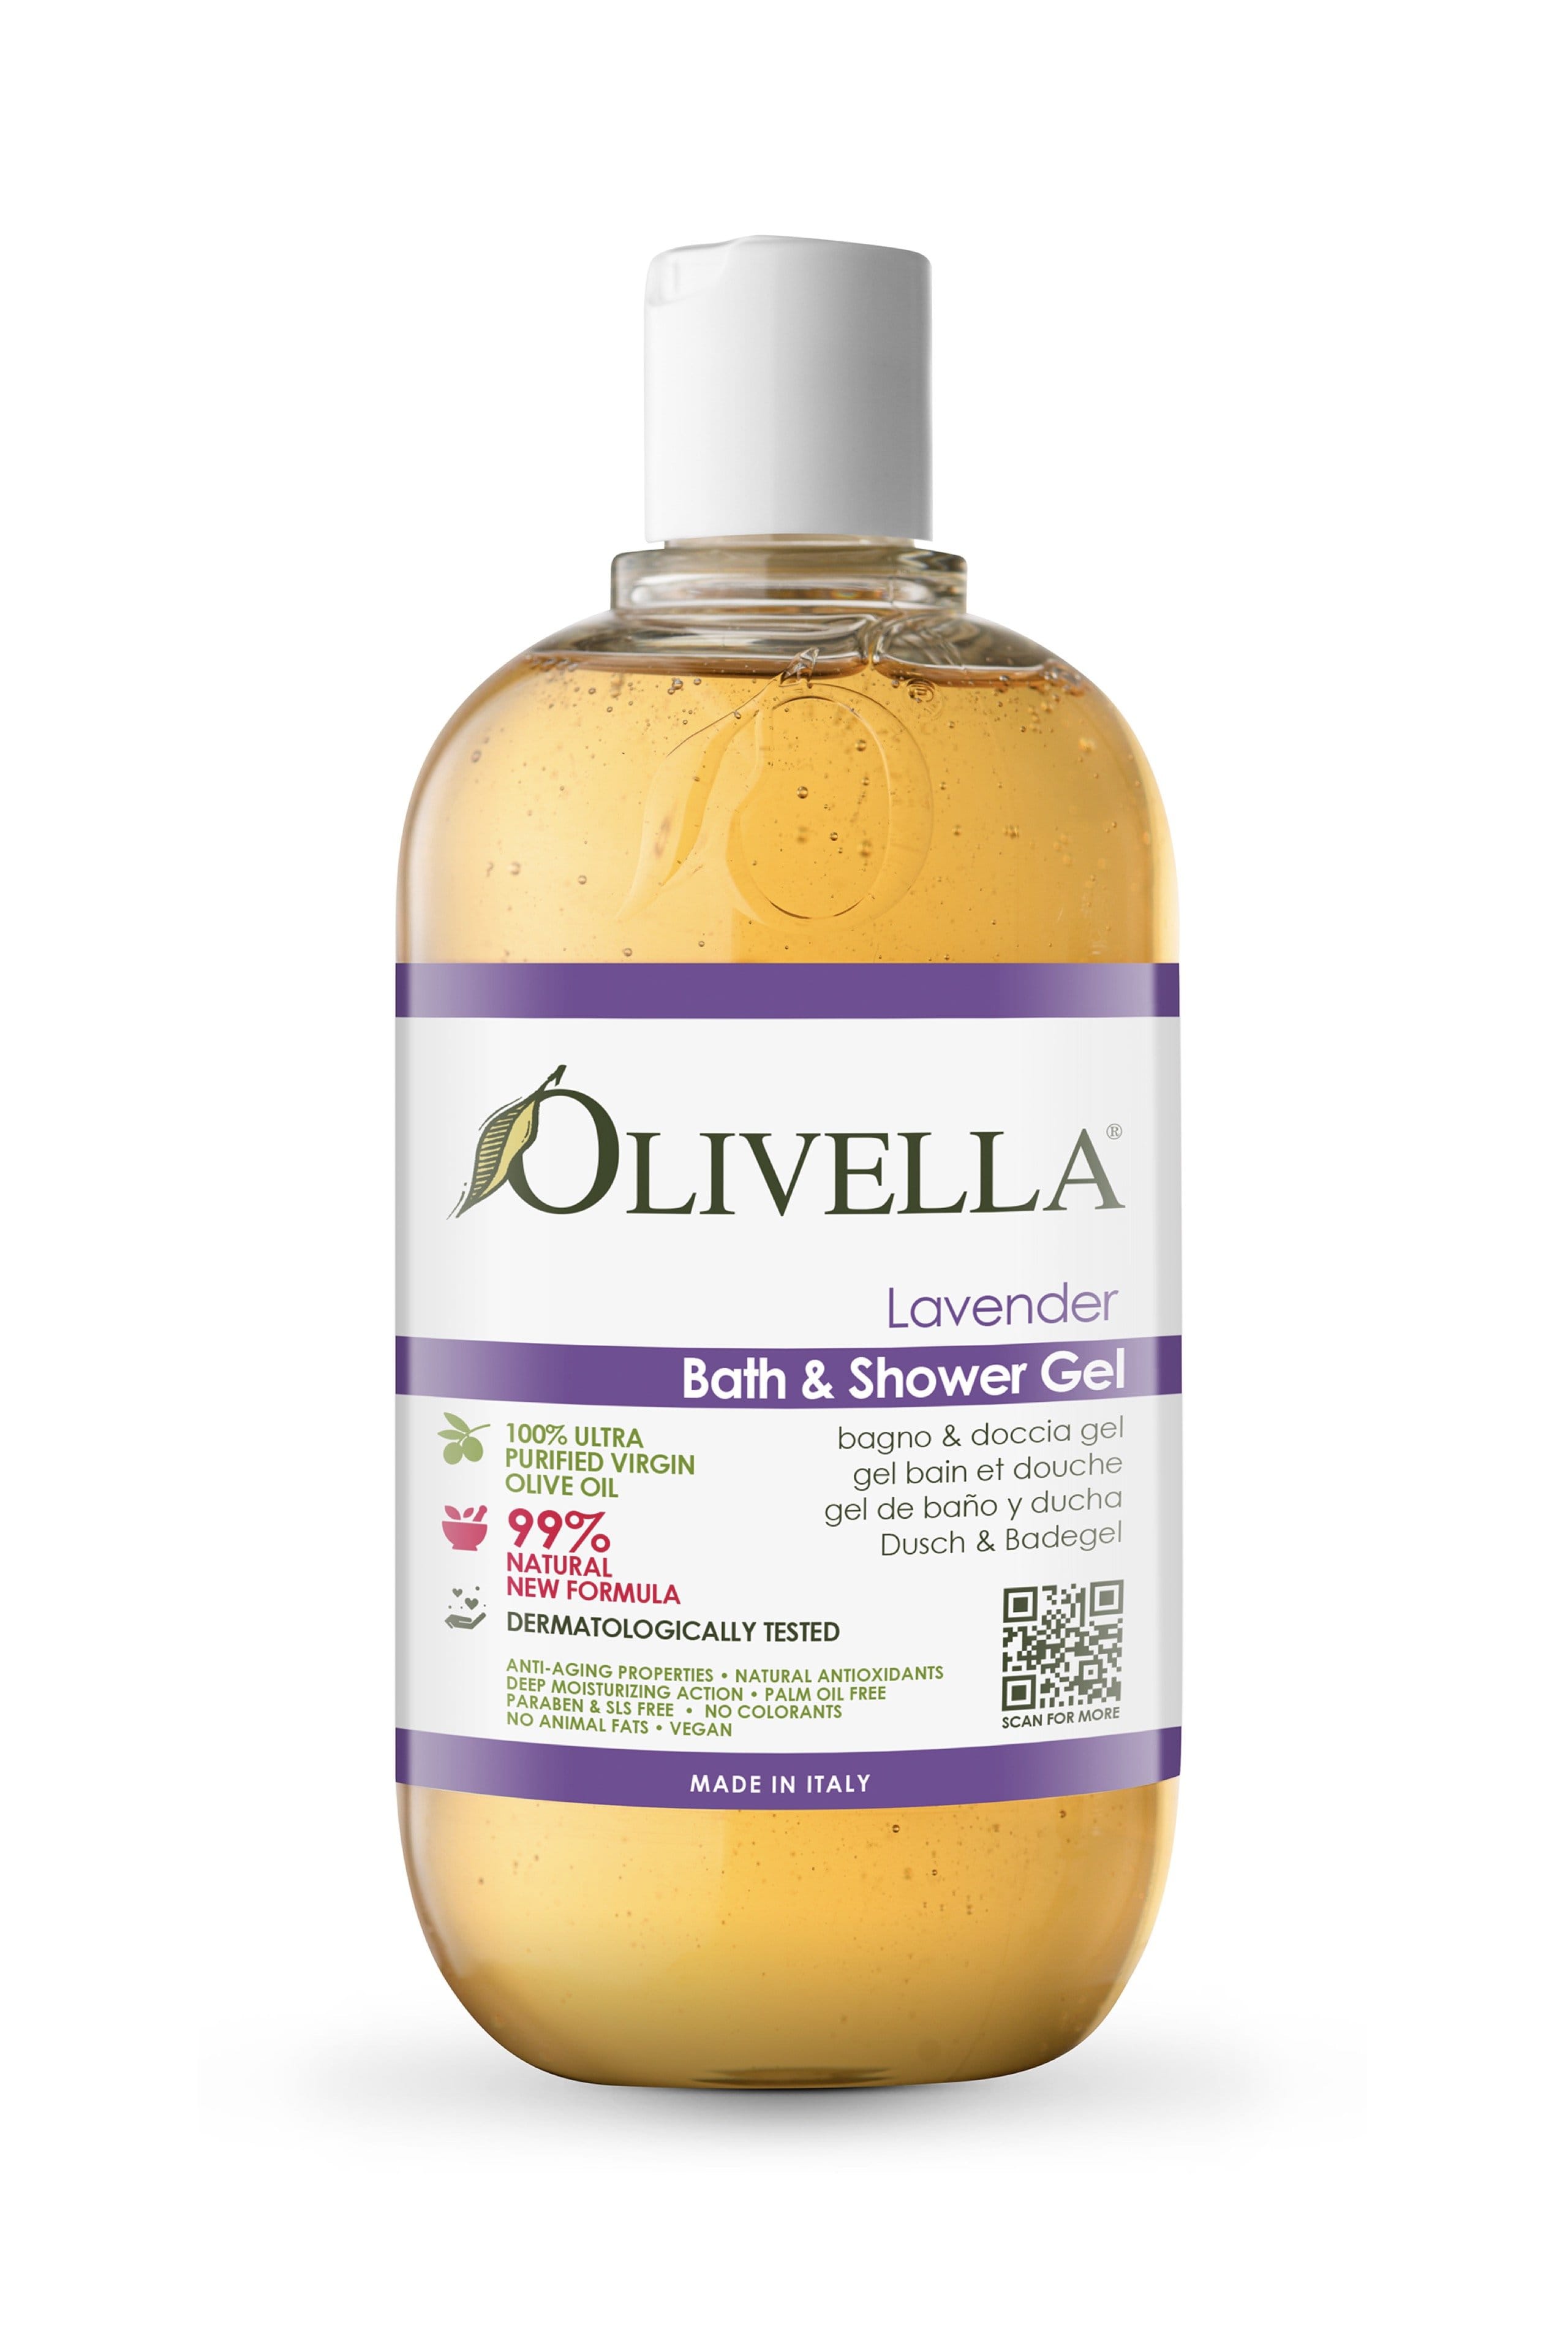 Olivella Bath & Shower Gel - Lavender - Olivella Europe